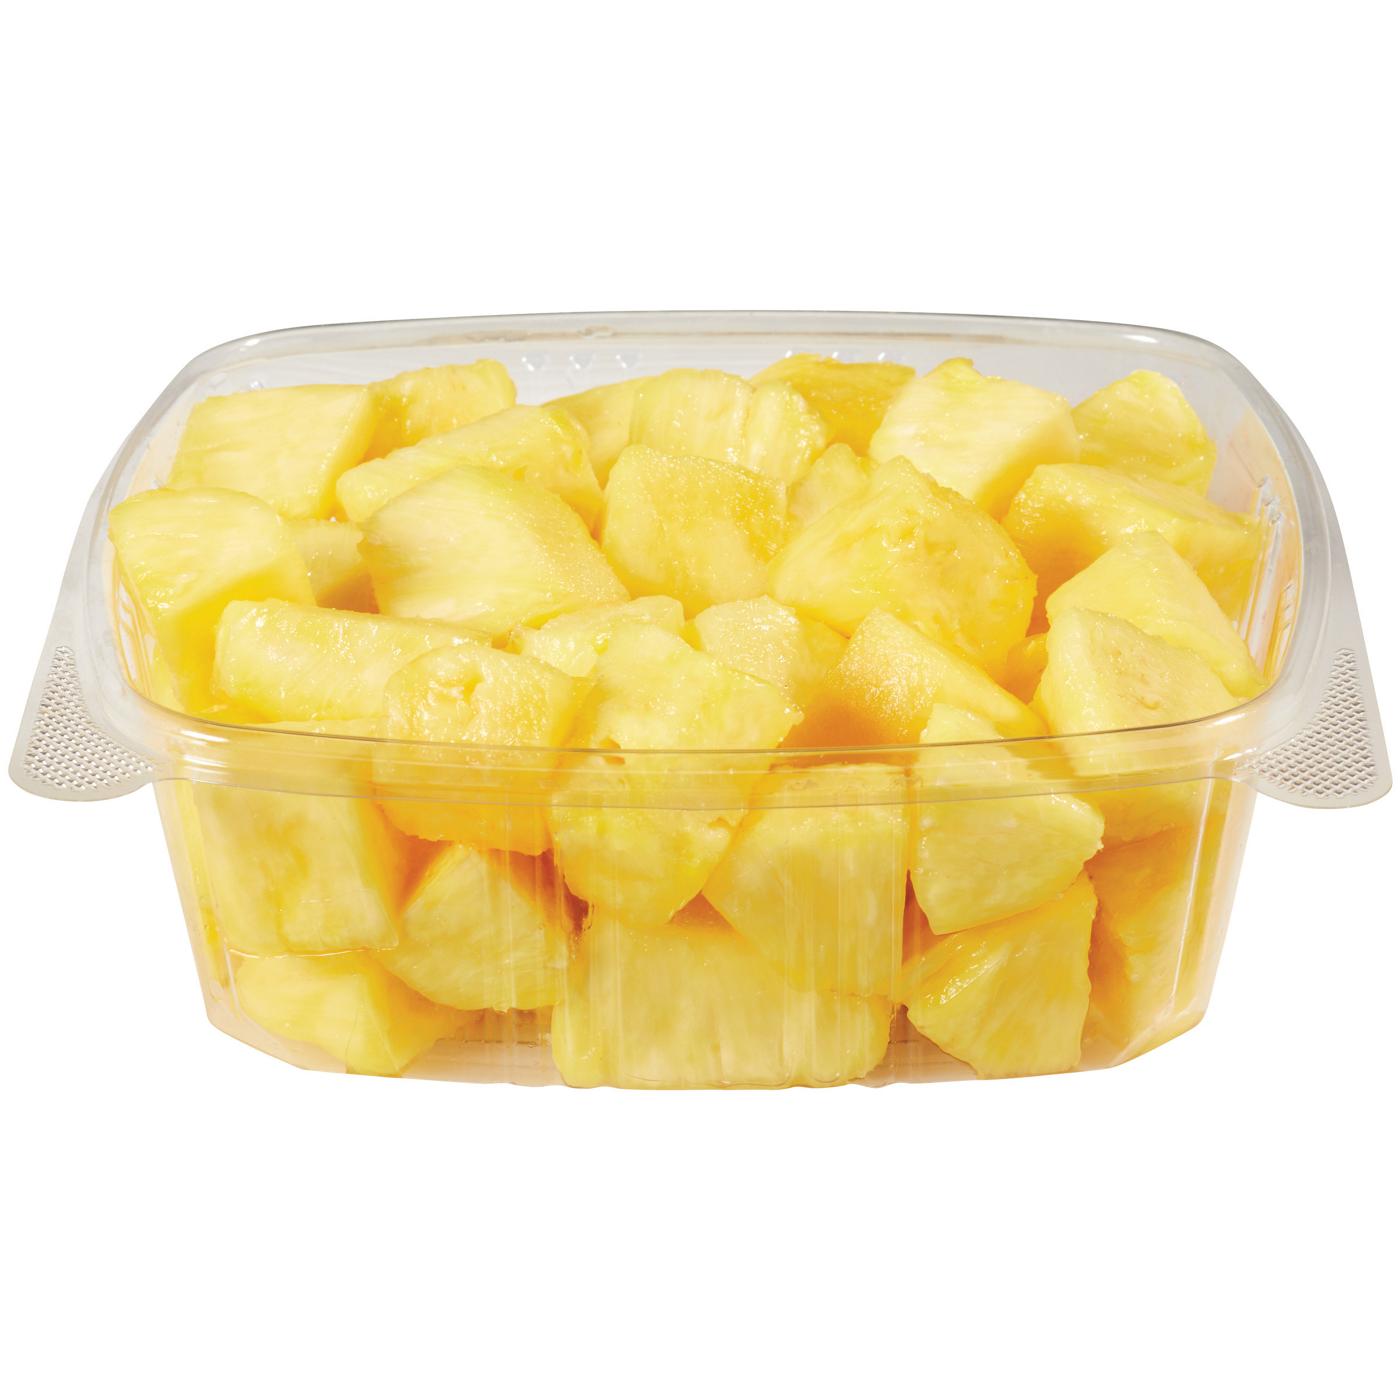 H-E-B Pineapple Chunks